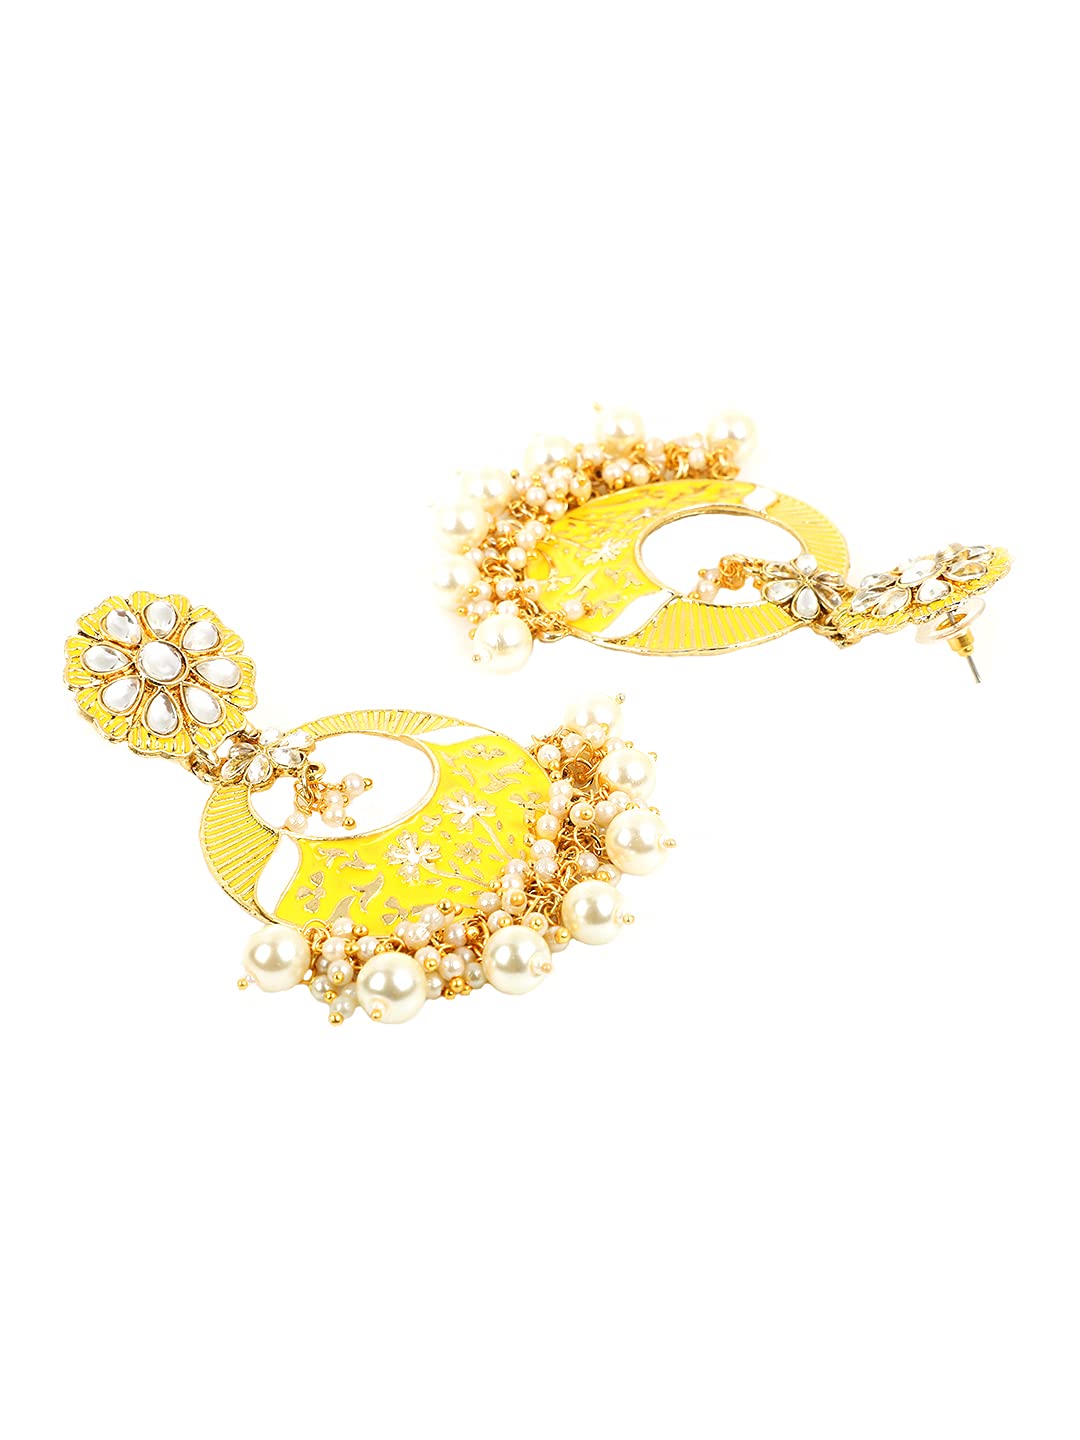 Yellow Chimes Meenakari Earrings for Women Gold Plated Traditional Moti Beads Yellow Meenakari Chand bali Earrings for Women and Girls